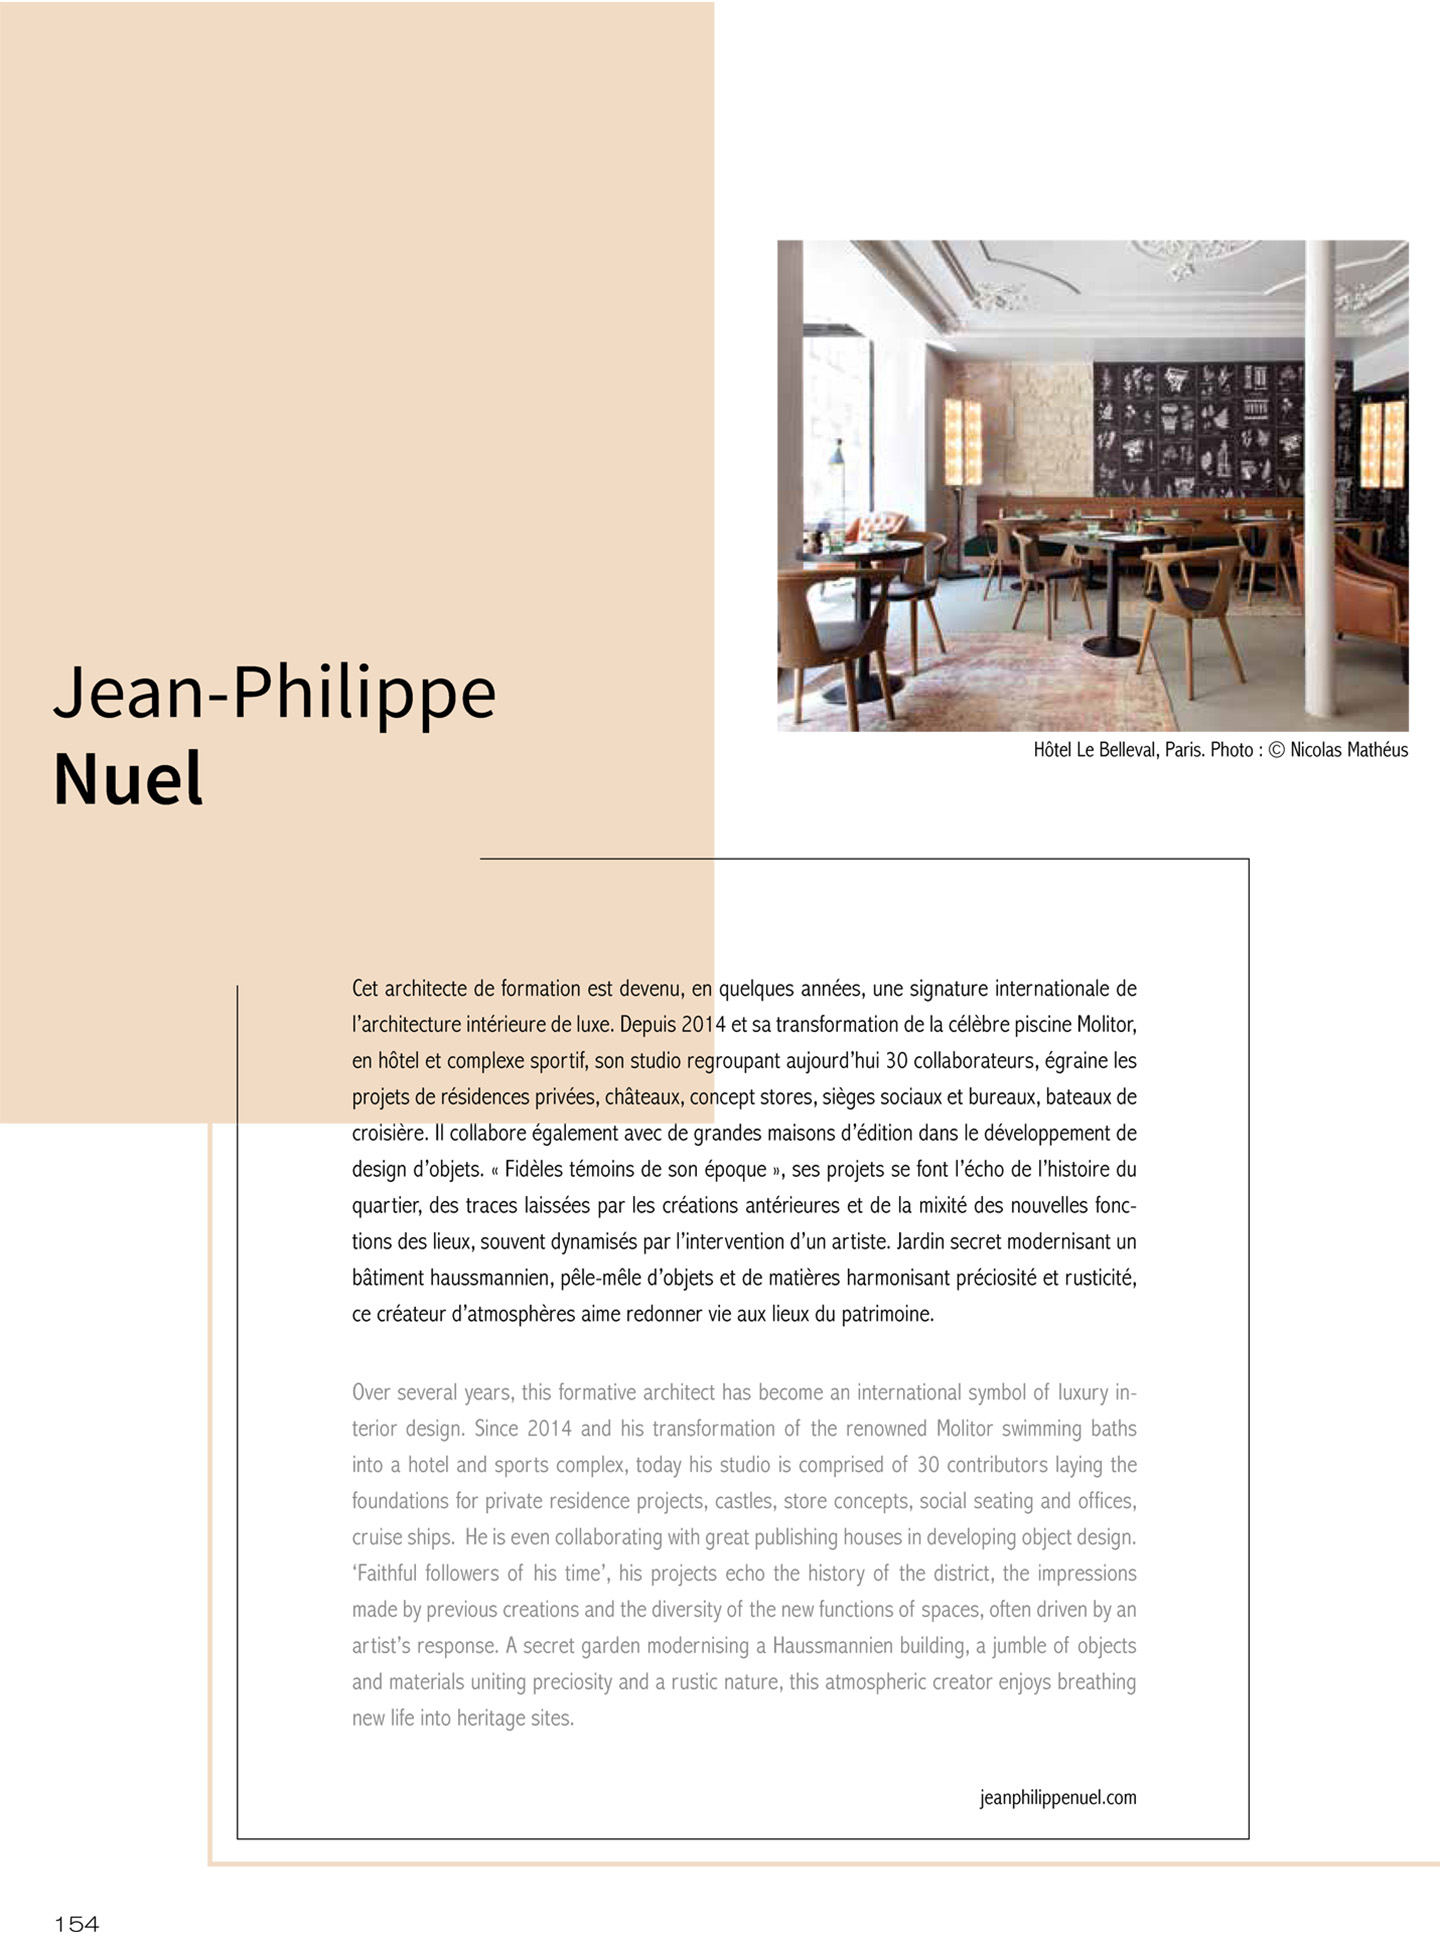 Article sur le studio jean-philippe nuel et notamment l'hotel le belleval, hotel de luxe parisien, jean-philippe nuel architecte de renom et décorateur d'intérieur